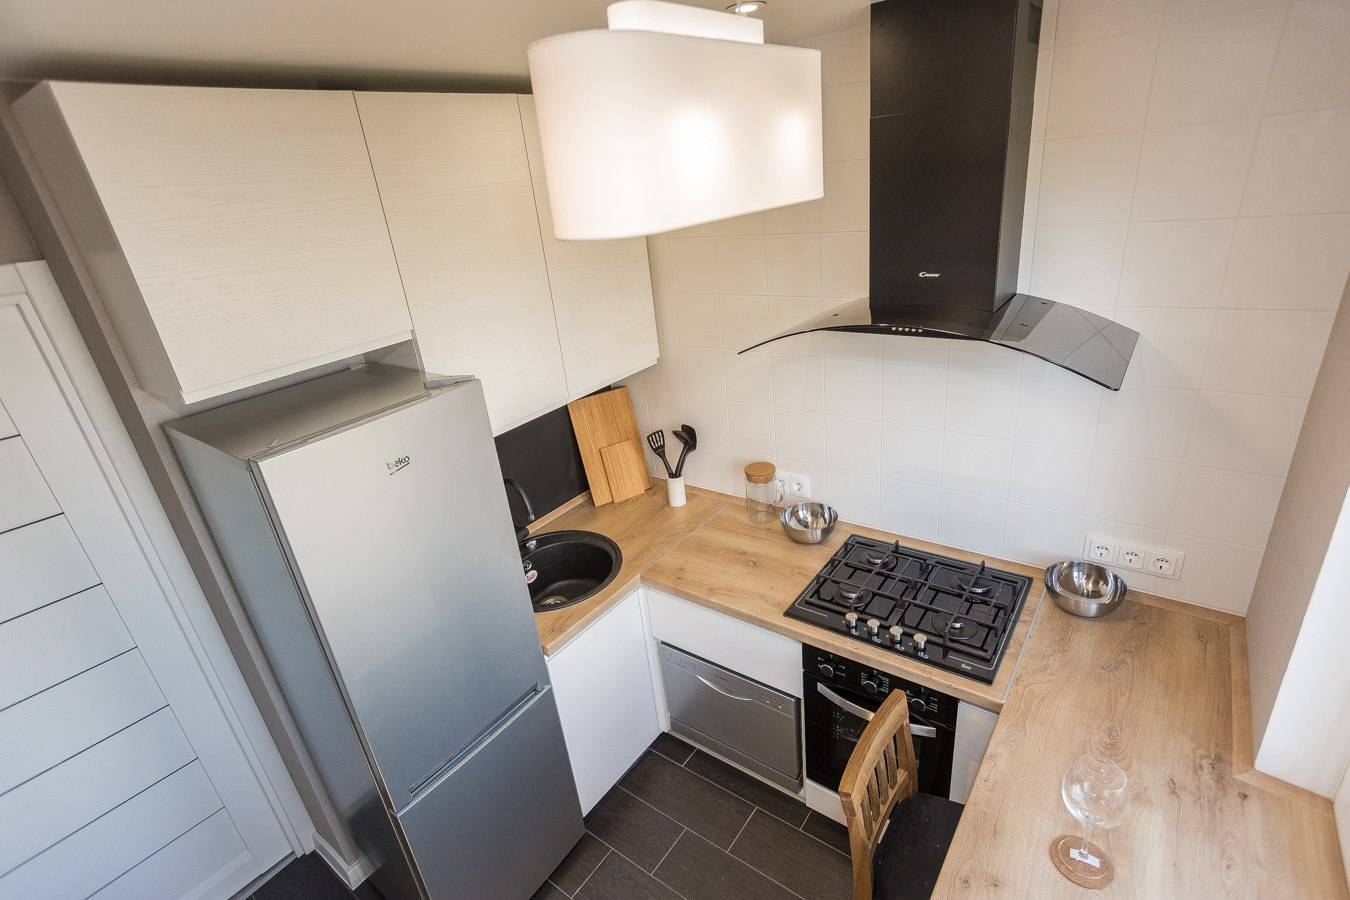 Дизайн кухни 6 кв м - секреты и нюансы оформления небольших кухонь (135 фото + видео)